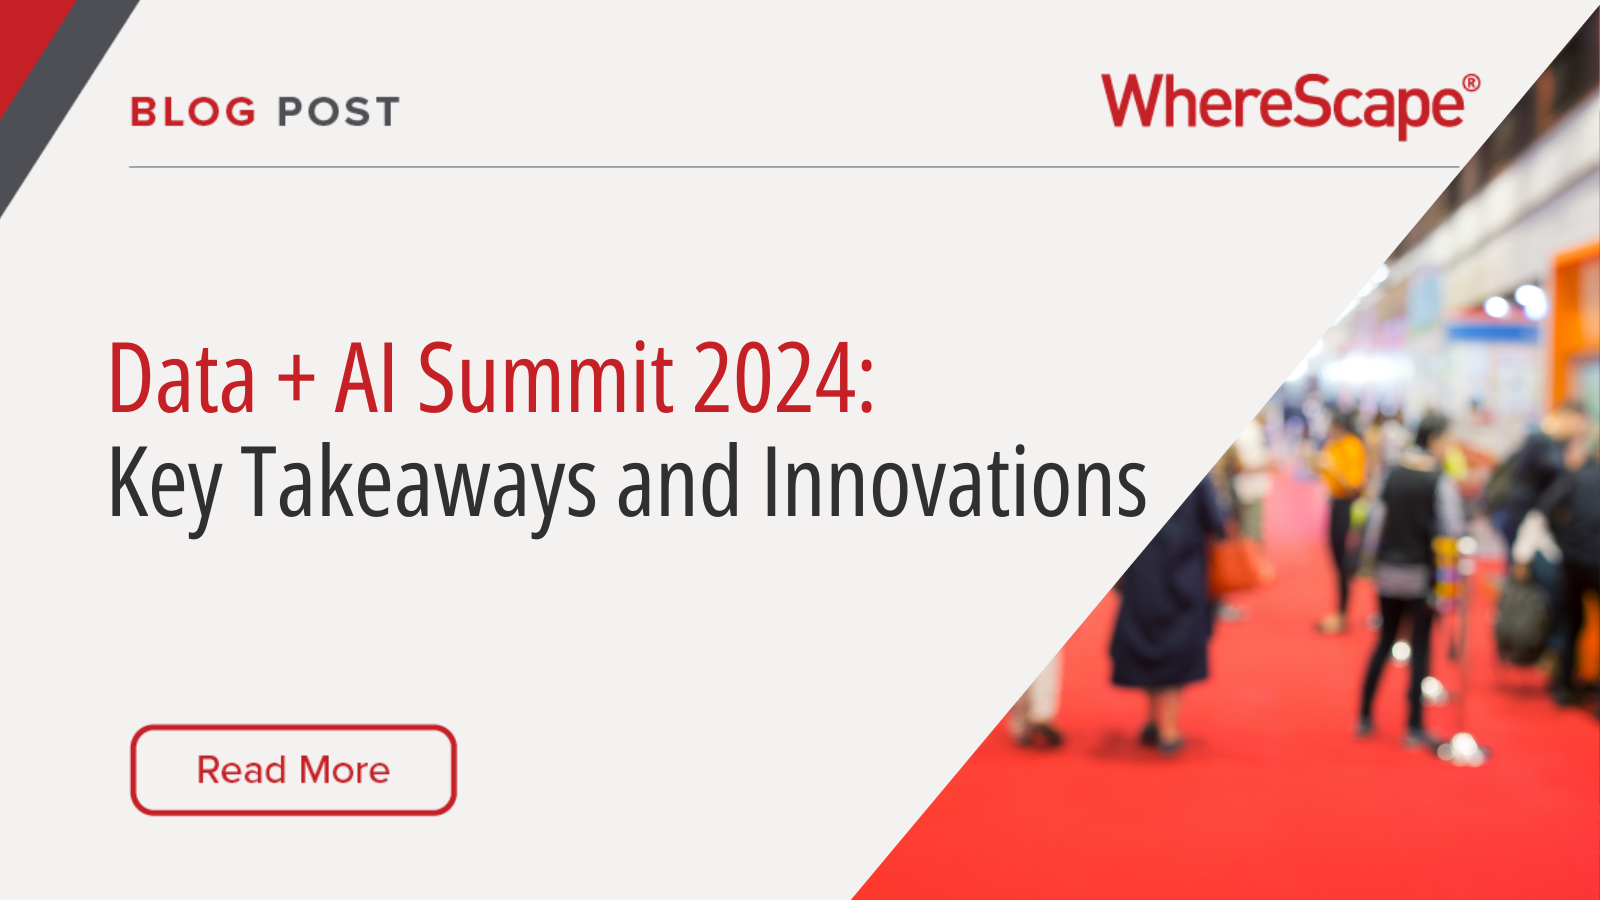 databricks data + AI summit 2024